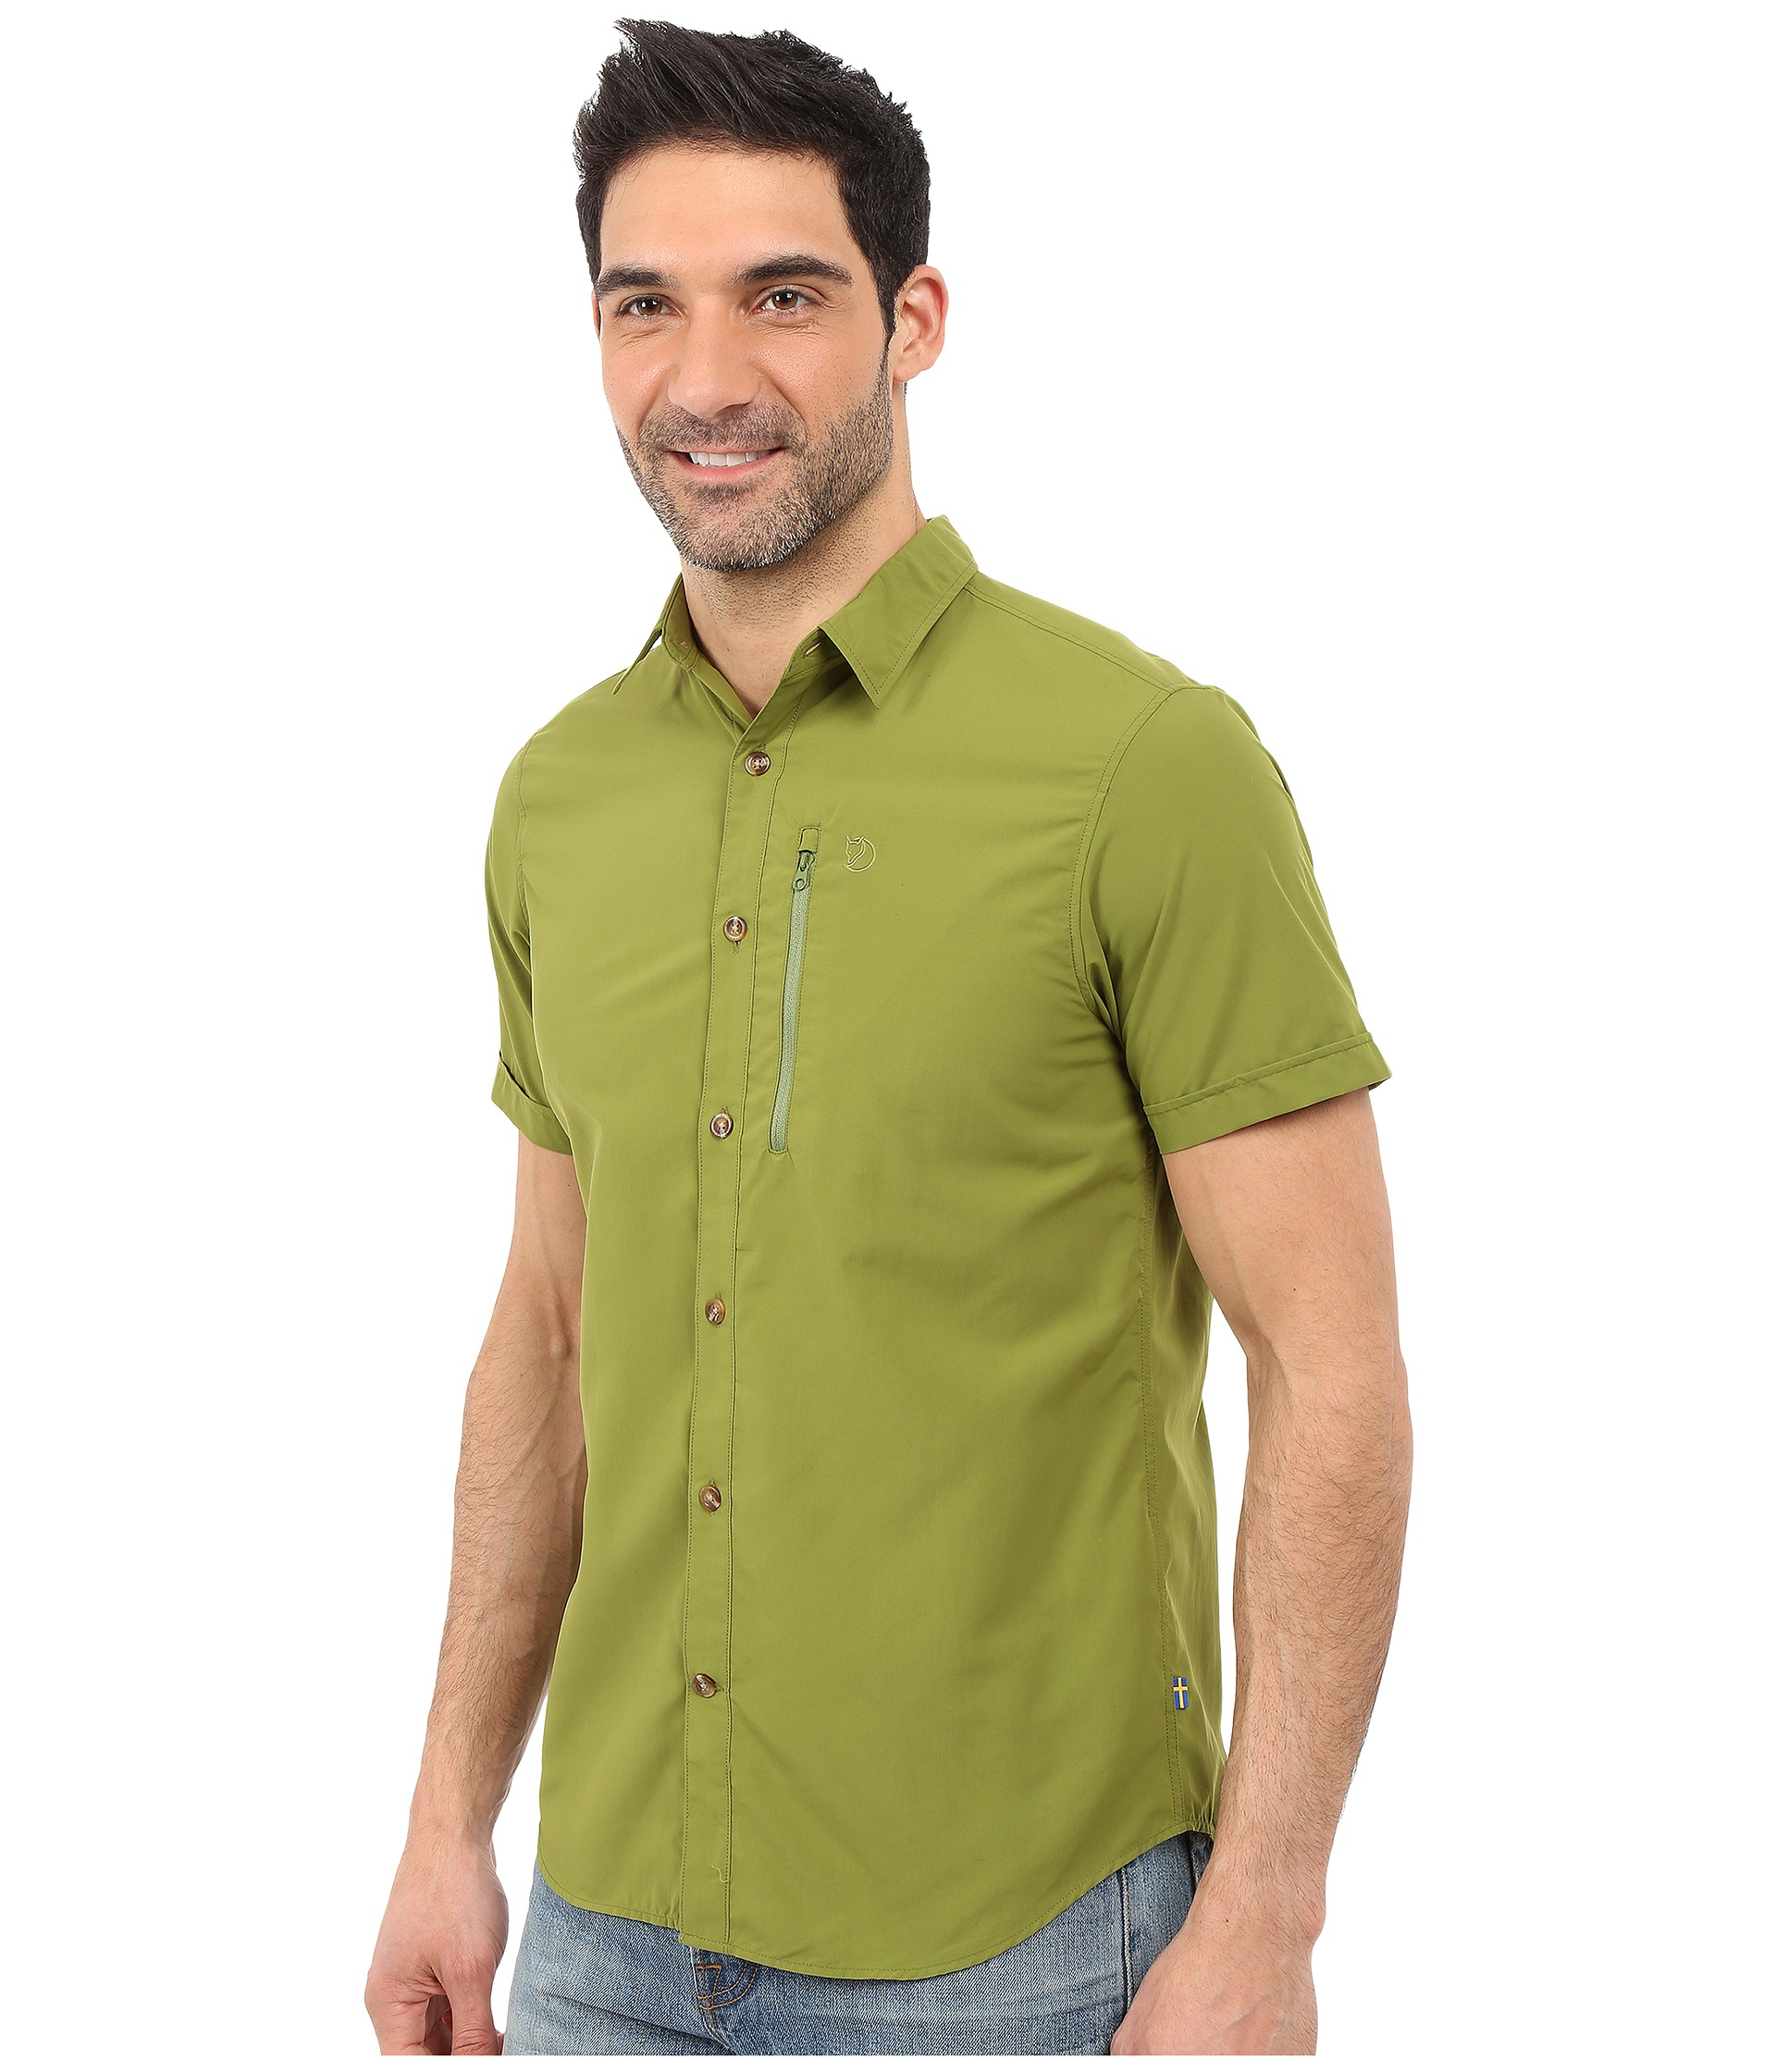 Fjallraven Synthetic Abisko Hike Shirt Short Sleeve in Green for Men - Lyst